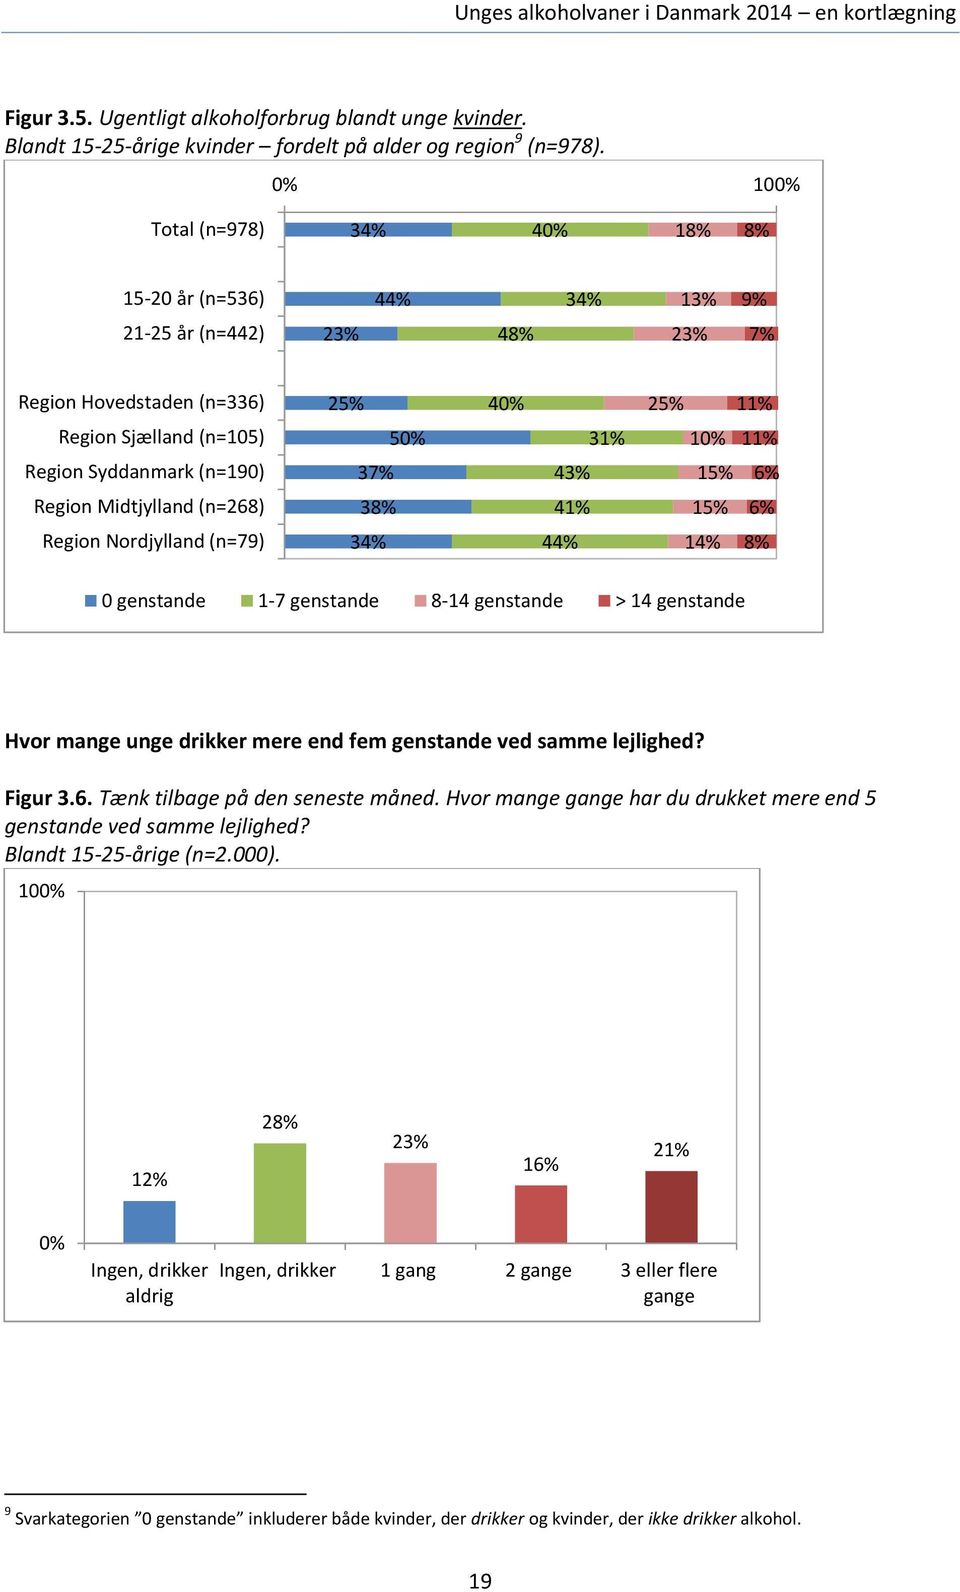 37% 43% 15% 6% Region Midtjylland (n=268) 38% 41% 15% 6% Region Nordjylland (n=79) 34% 44% 14% 8% 0 genstande 1-7 genstande 8-14 genstande > 14 genstande Hvor mange unge drikker mere end fem